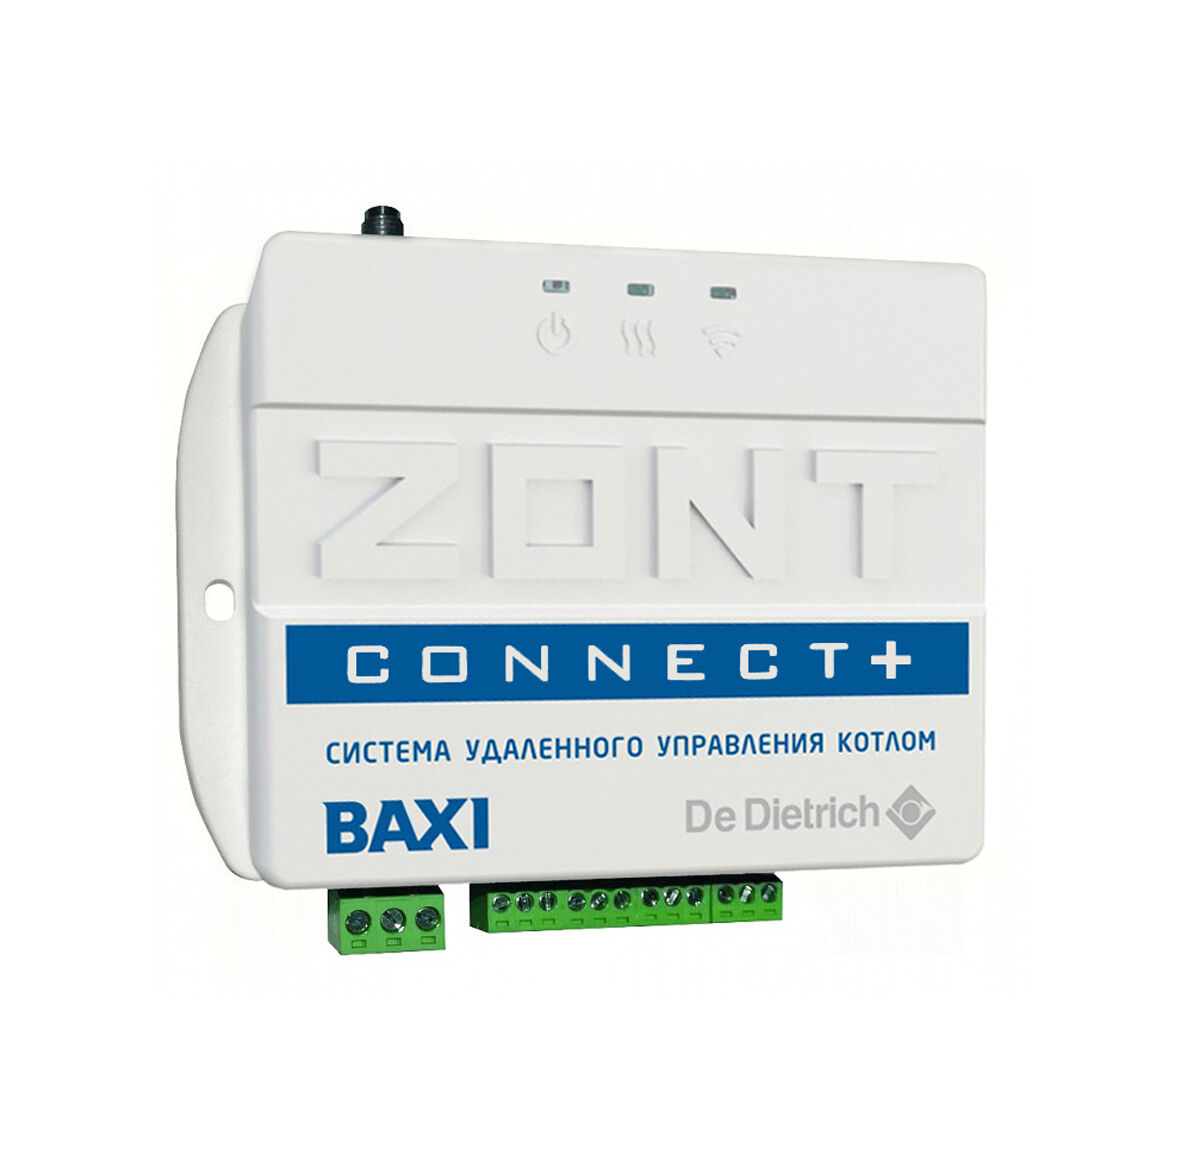 Бакси коннект плюс. Zont connect Baxi. Термостат Zont Smart 2.0. GSM термостат Zont BT-2. Ml00003824 система удаленного управления котлом Zont connect.